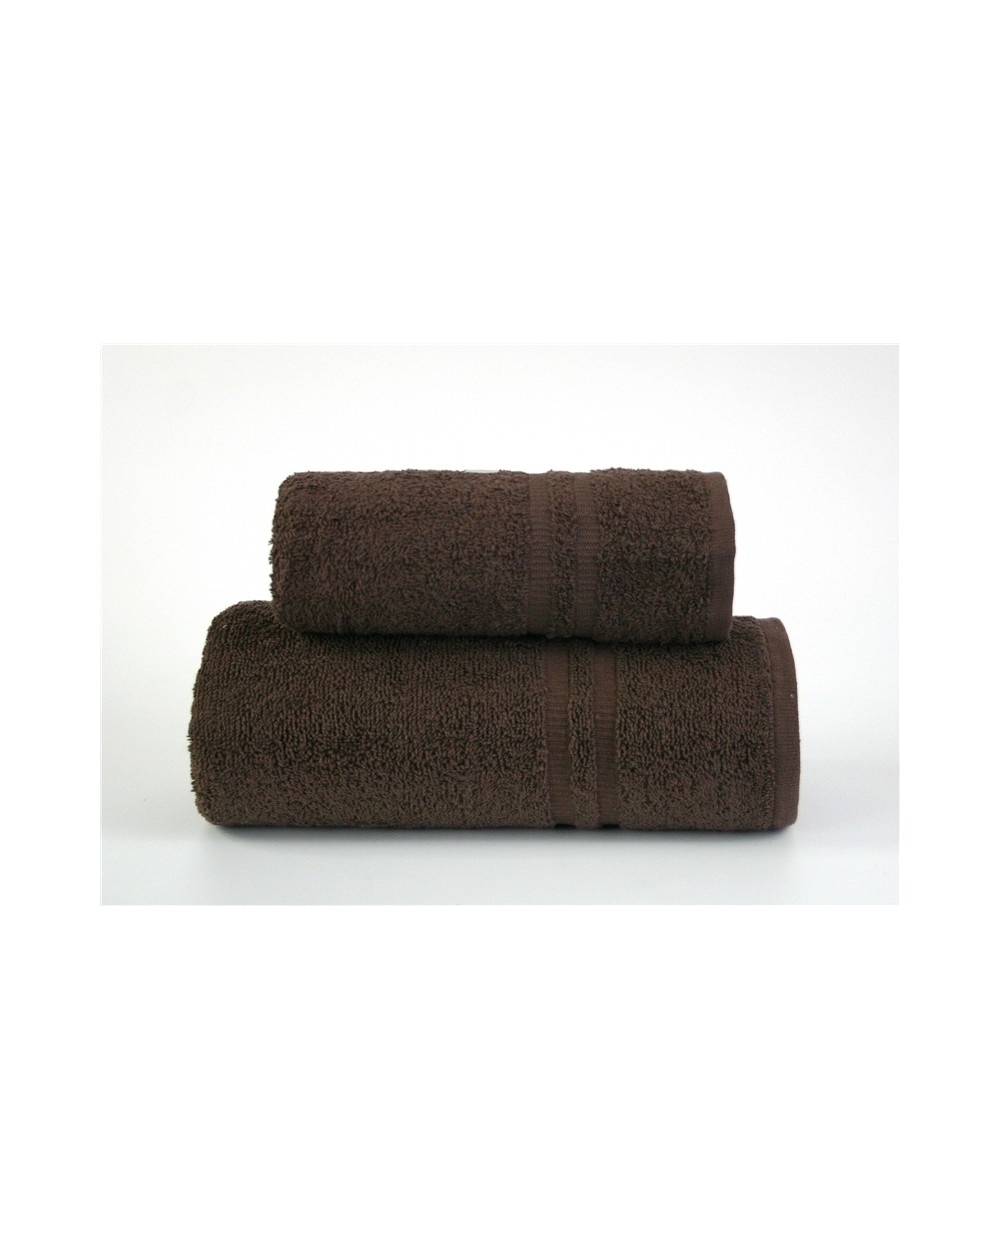 Ręcznik Junak New bawełna 50x100 brązowy